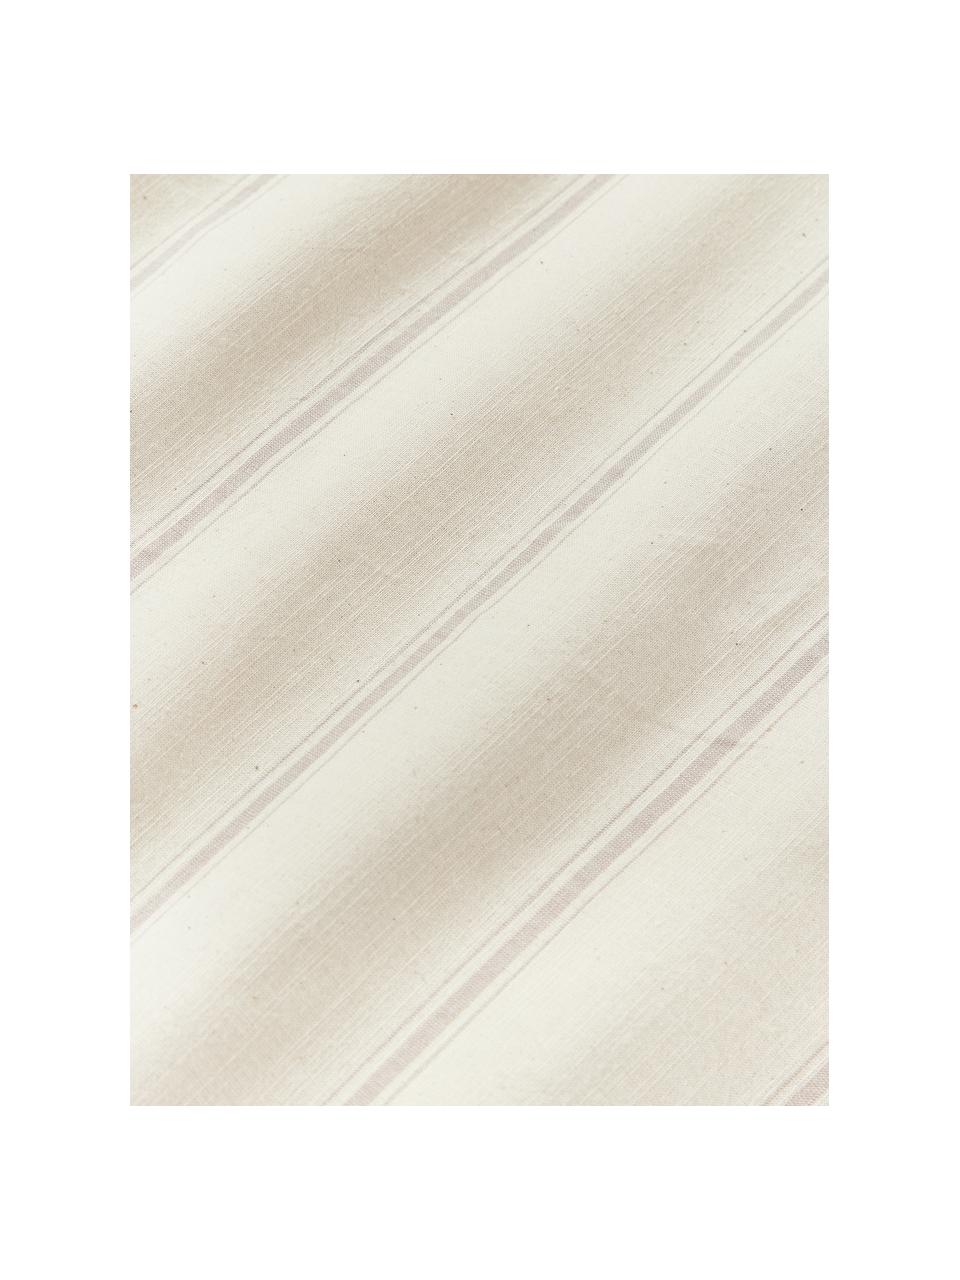 Gewaschener Baumwoll-Bettdeckenbezug Caspian mit Streifen, 100 % Baumwolle

Fadendichte 110 TC, Standard Qualität

Bettwäsche aus Baumwolle fühlt sich auf der Haut angenehm weich an, nimmt Feuchtigkeit gut auf und eignet sich für Allergiker.
Durch ein besonderes Waschungsverfahren erhält der Stoff eine robuste, unregelmäßige Stonewash-Optik. Außerdem wird der Stoff dadurch weich und geschmeidig im Griff und erhält eine natürliche Knitter-Optik, die kein Bügeln erfordert und Gemütlichkeit ausstrahlt.

Das in diesem Produkt verwendete Material ist schadstoffgeprüft und zertifiziert nach STANDARD 100 by OEKO-TEX®, 4854CIT, CITEVE, Beige, Off White, B 200 x L 200 cm